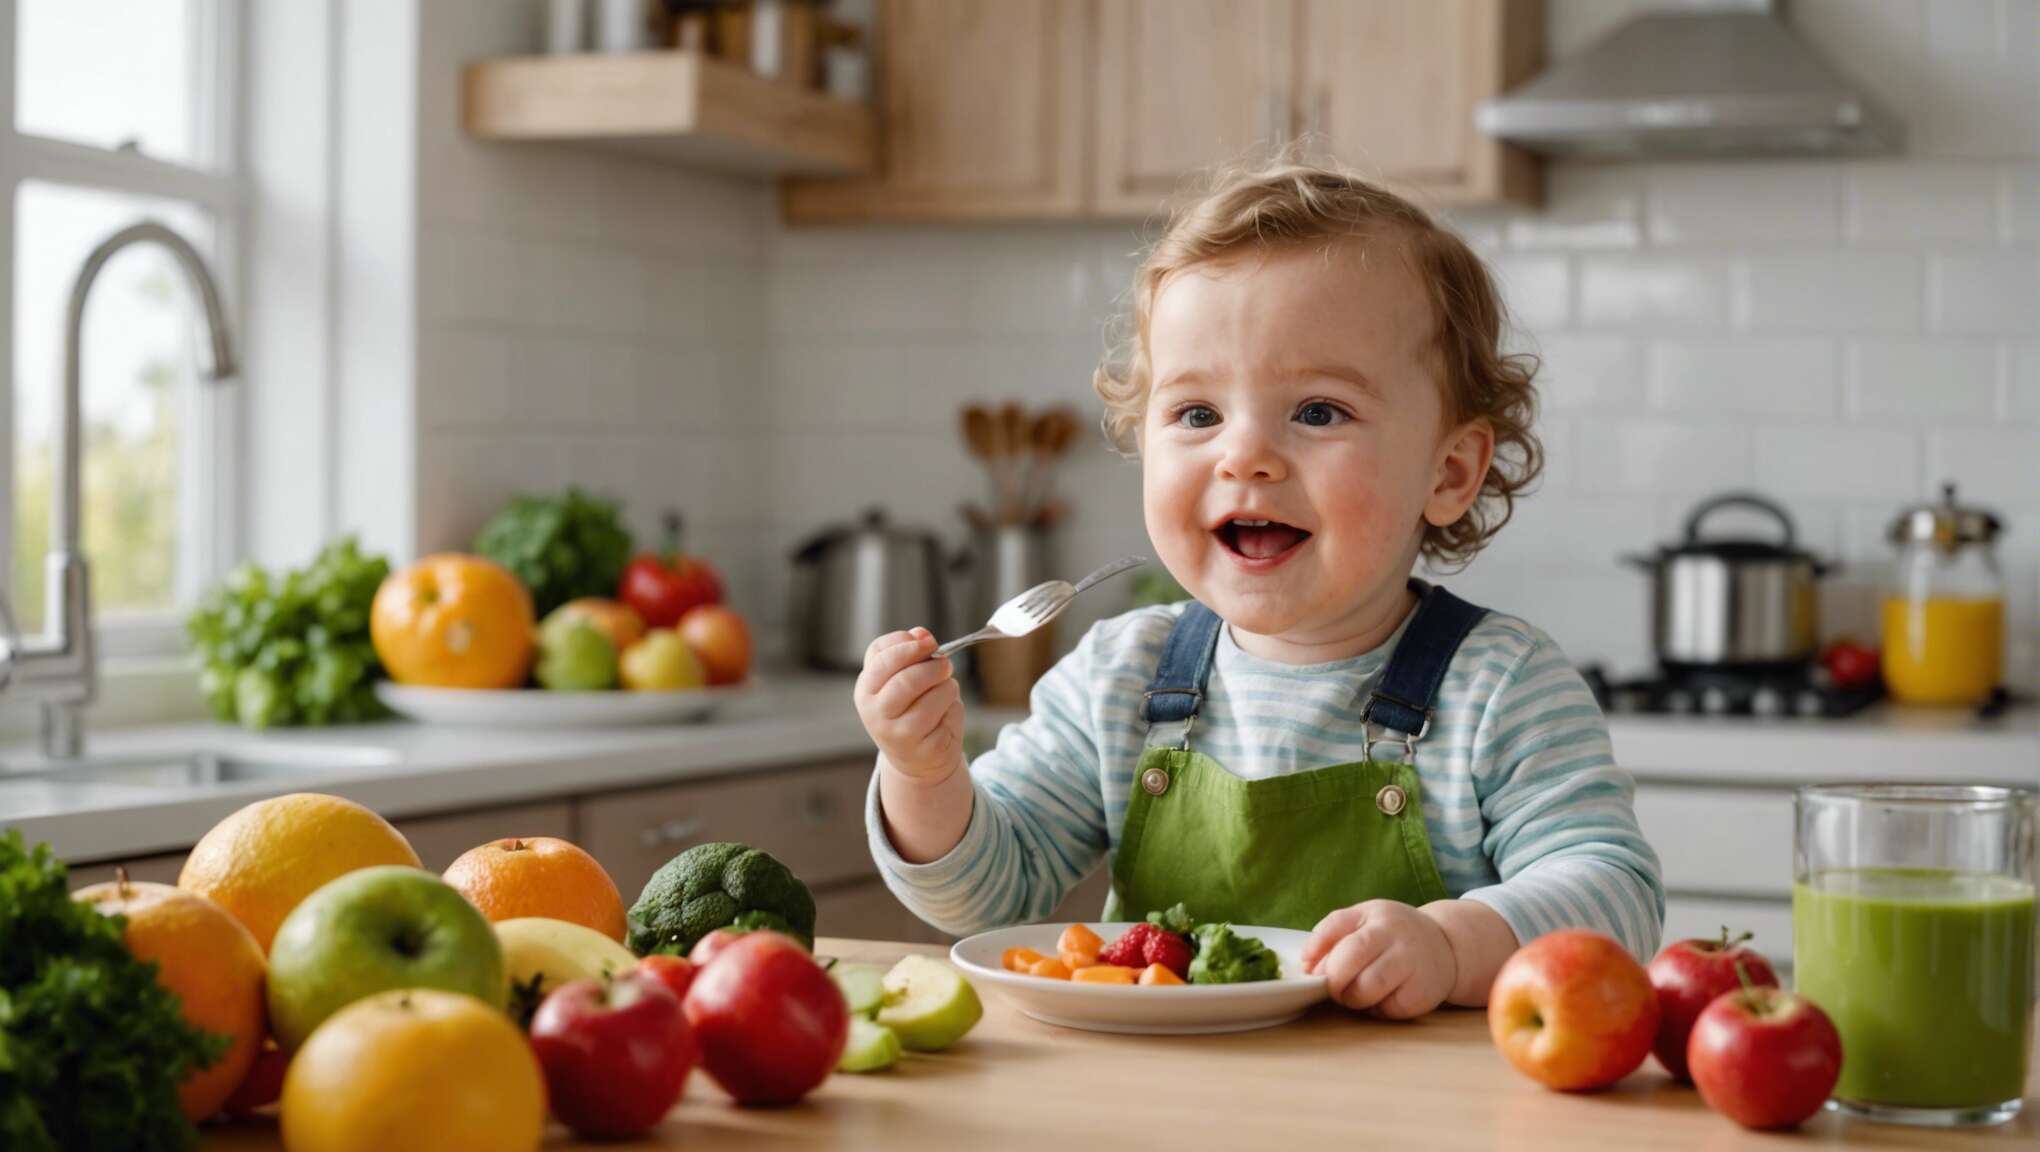 Créer une routine alimentaire saine pour bébé avec des recettes simples